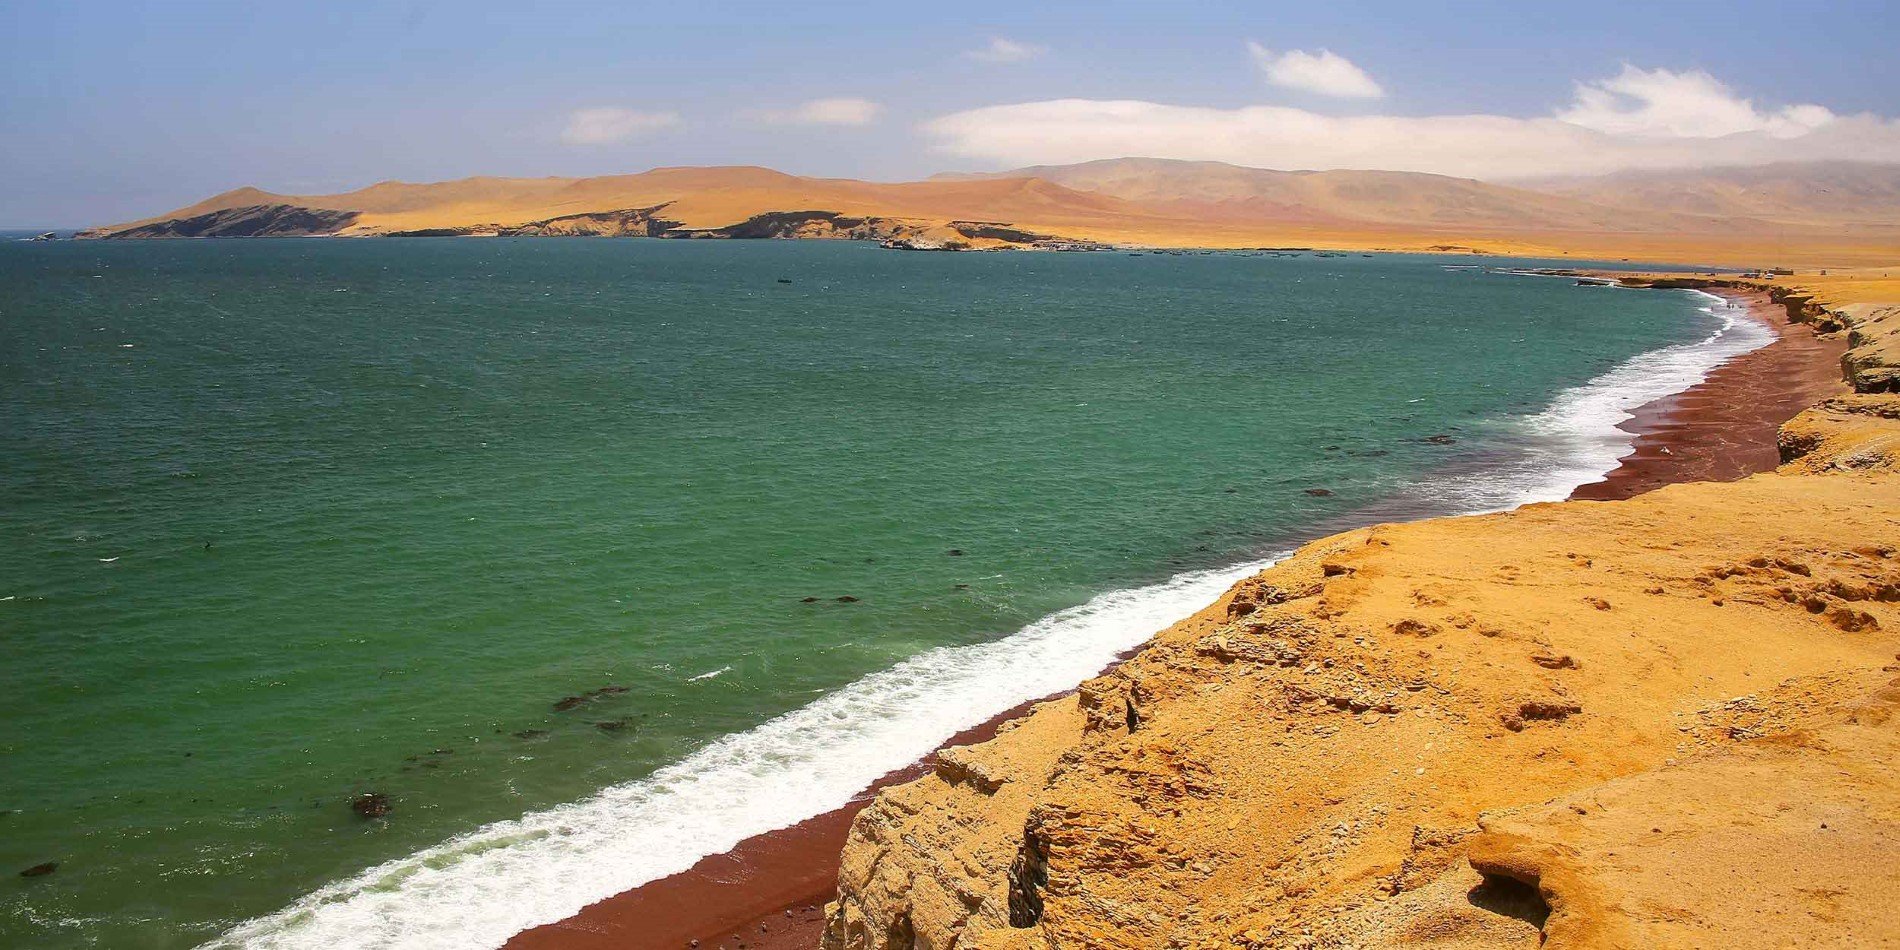 Les falaises de la réserve nationale de Paracas au Pérou